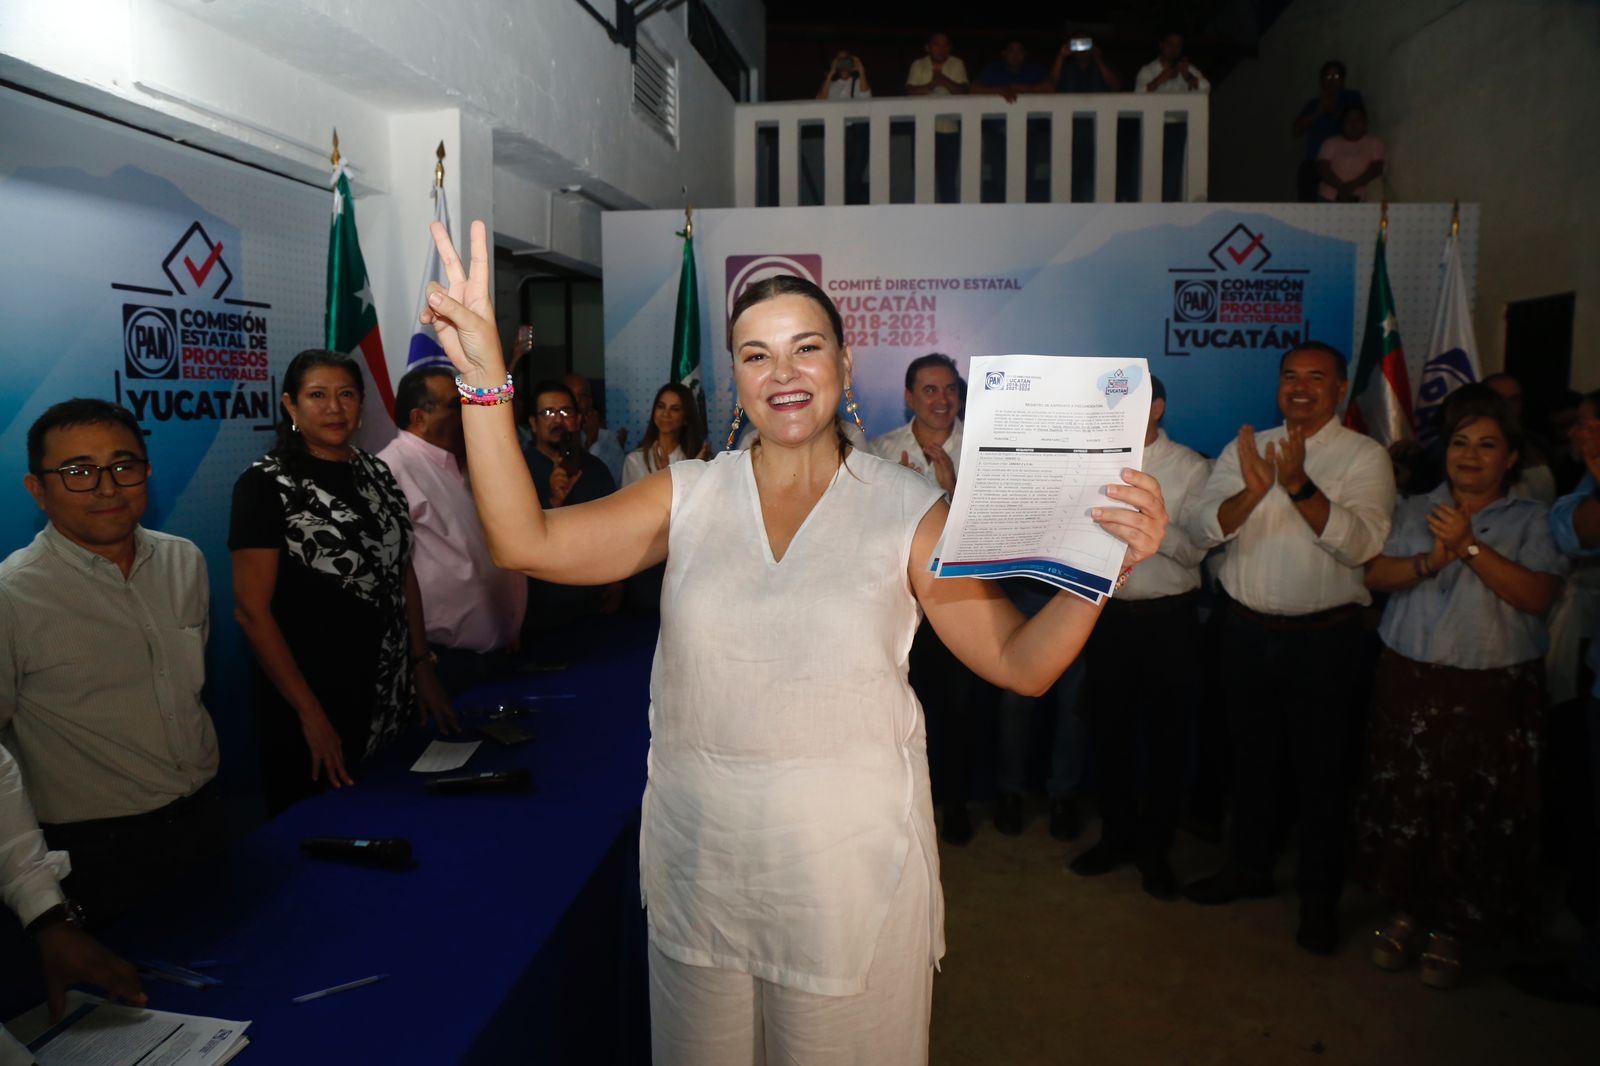 Cecilia Patrón Laviada acudió acompañada de varios simpatizantes a registrase en la búsqueda de la alcaldía de Mérida